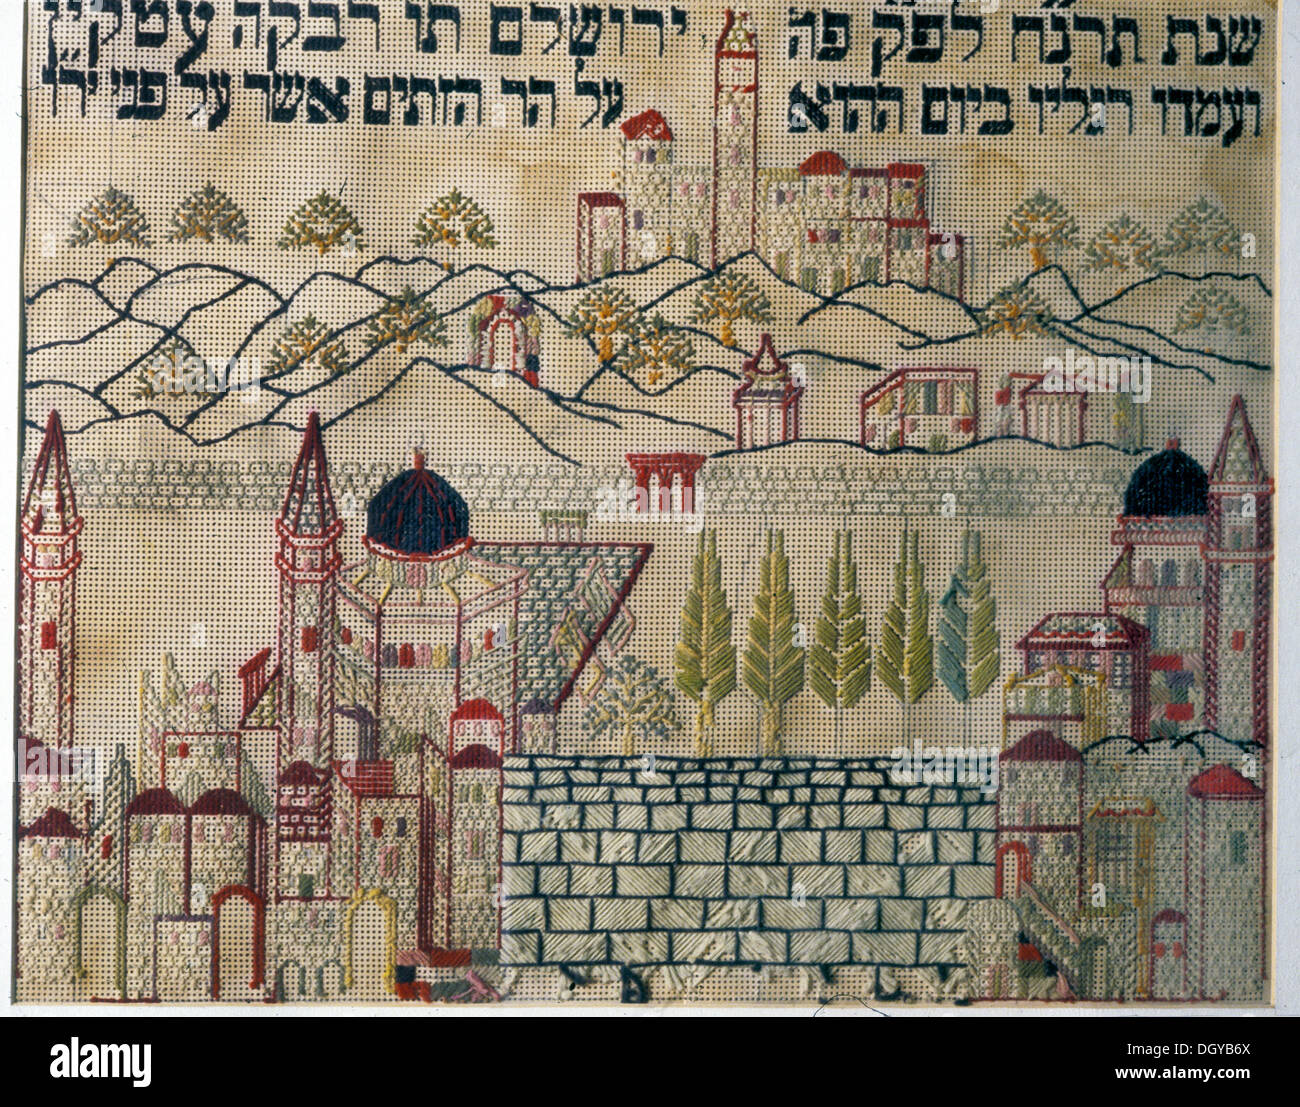 5585. Bordados llamado 'East' - muestreador de cosido colgando en el muro oriental de la mitad de los judíos de Europa para indicar la dirección de la casa de oración en Jerusalén, en el centro del muro occidental. Foto de stock